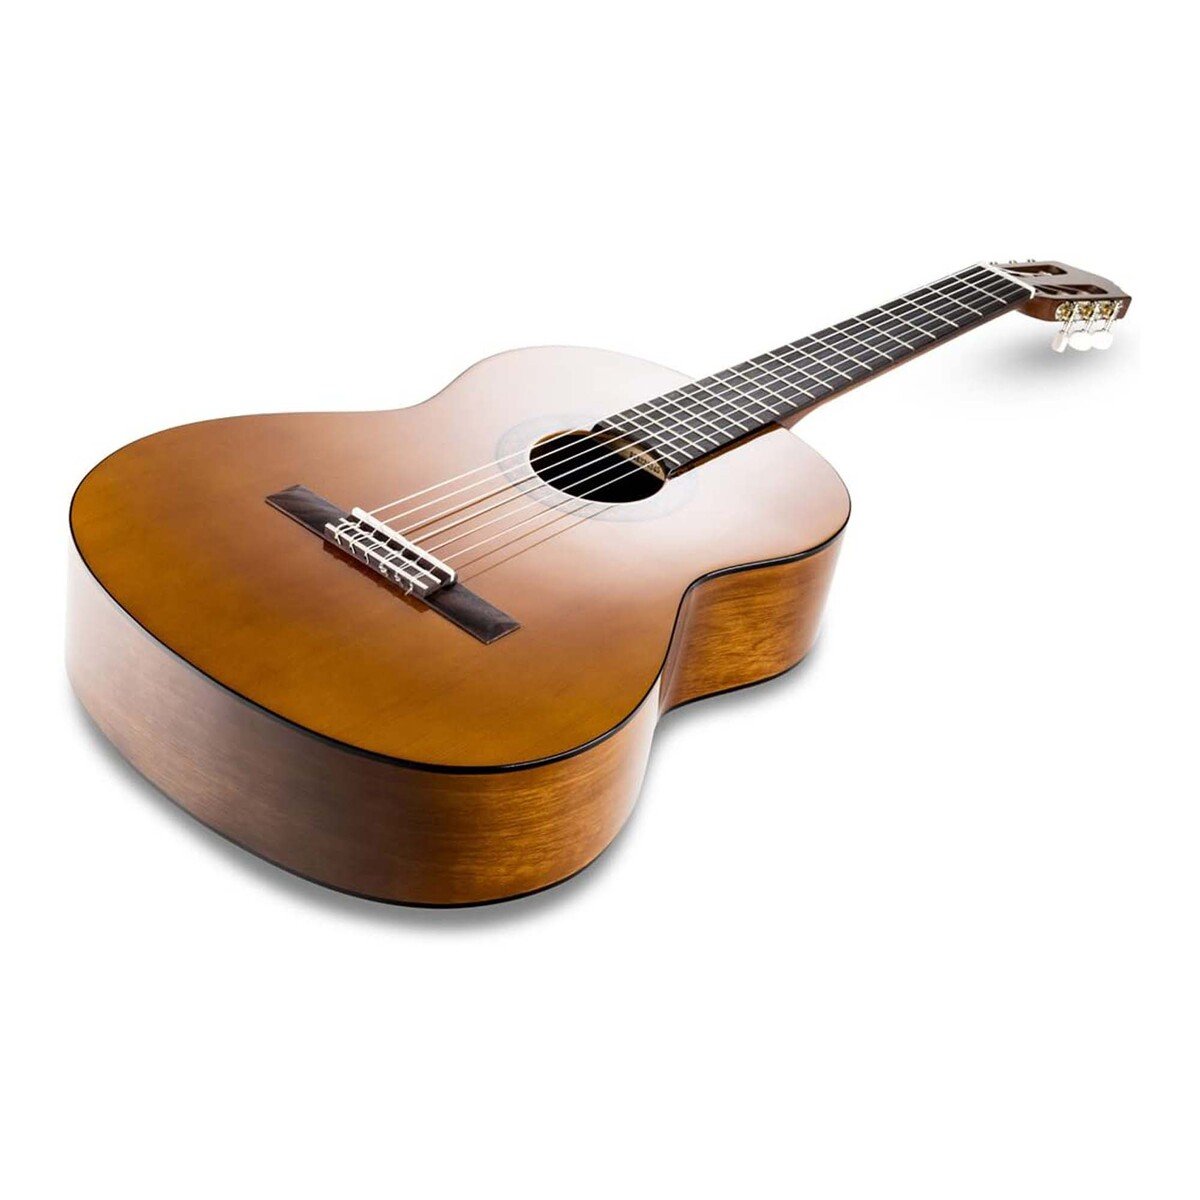 Yamaha Guitar C40T